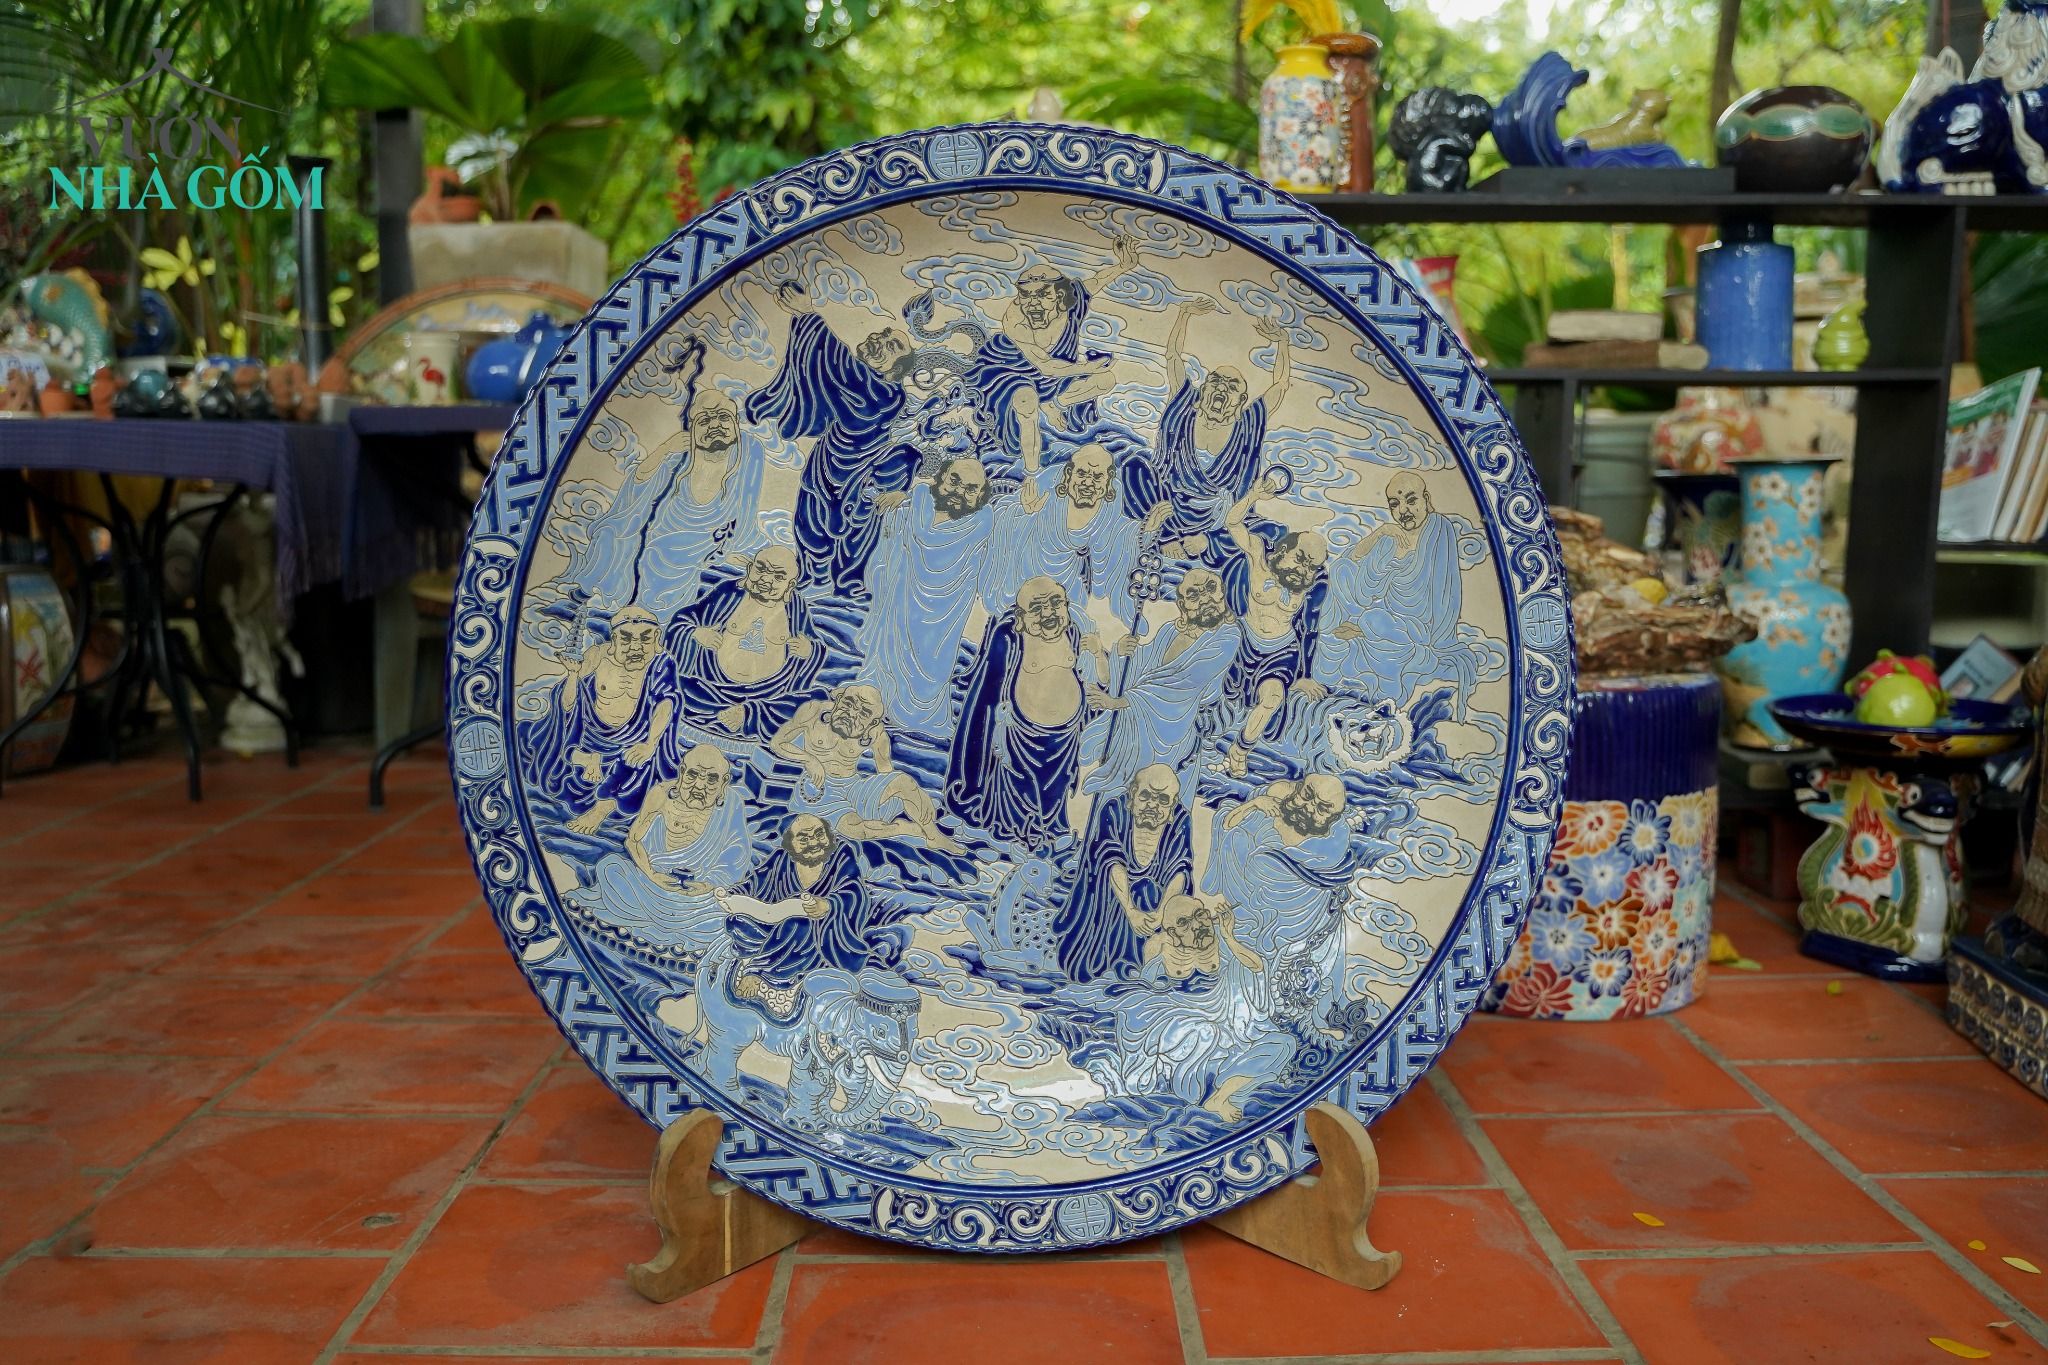  Dĩa gốm mỹ nghệ đề tài Thập Bát La Hán, phiên bản men xanh cobalt cổ điển, D90 cm 